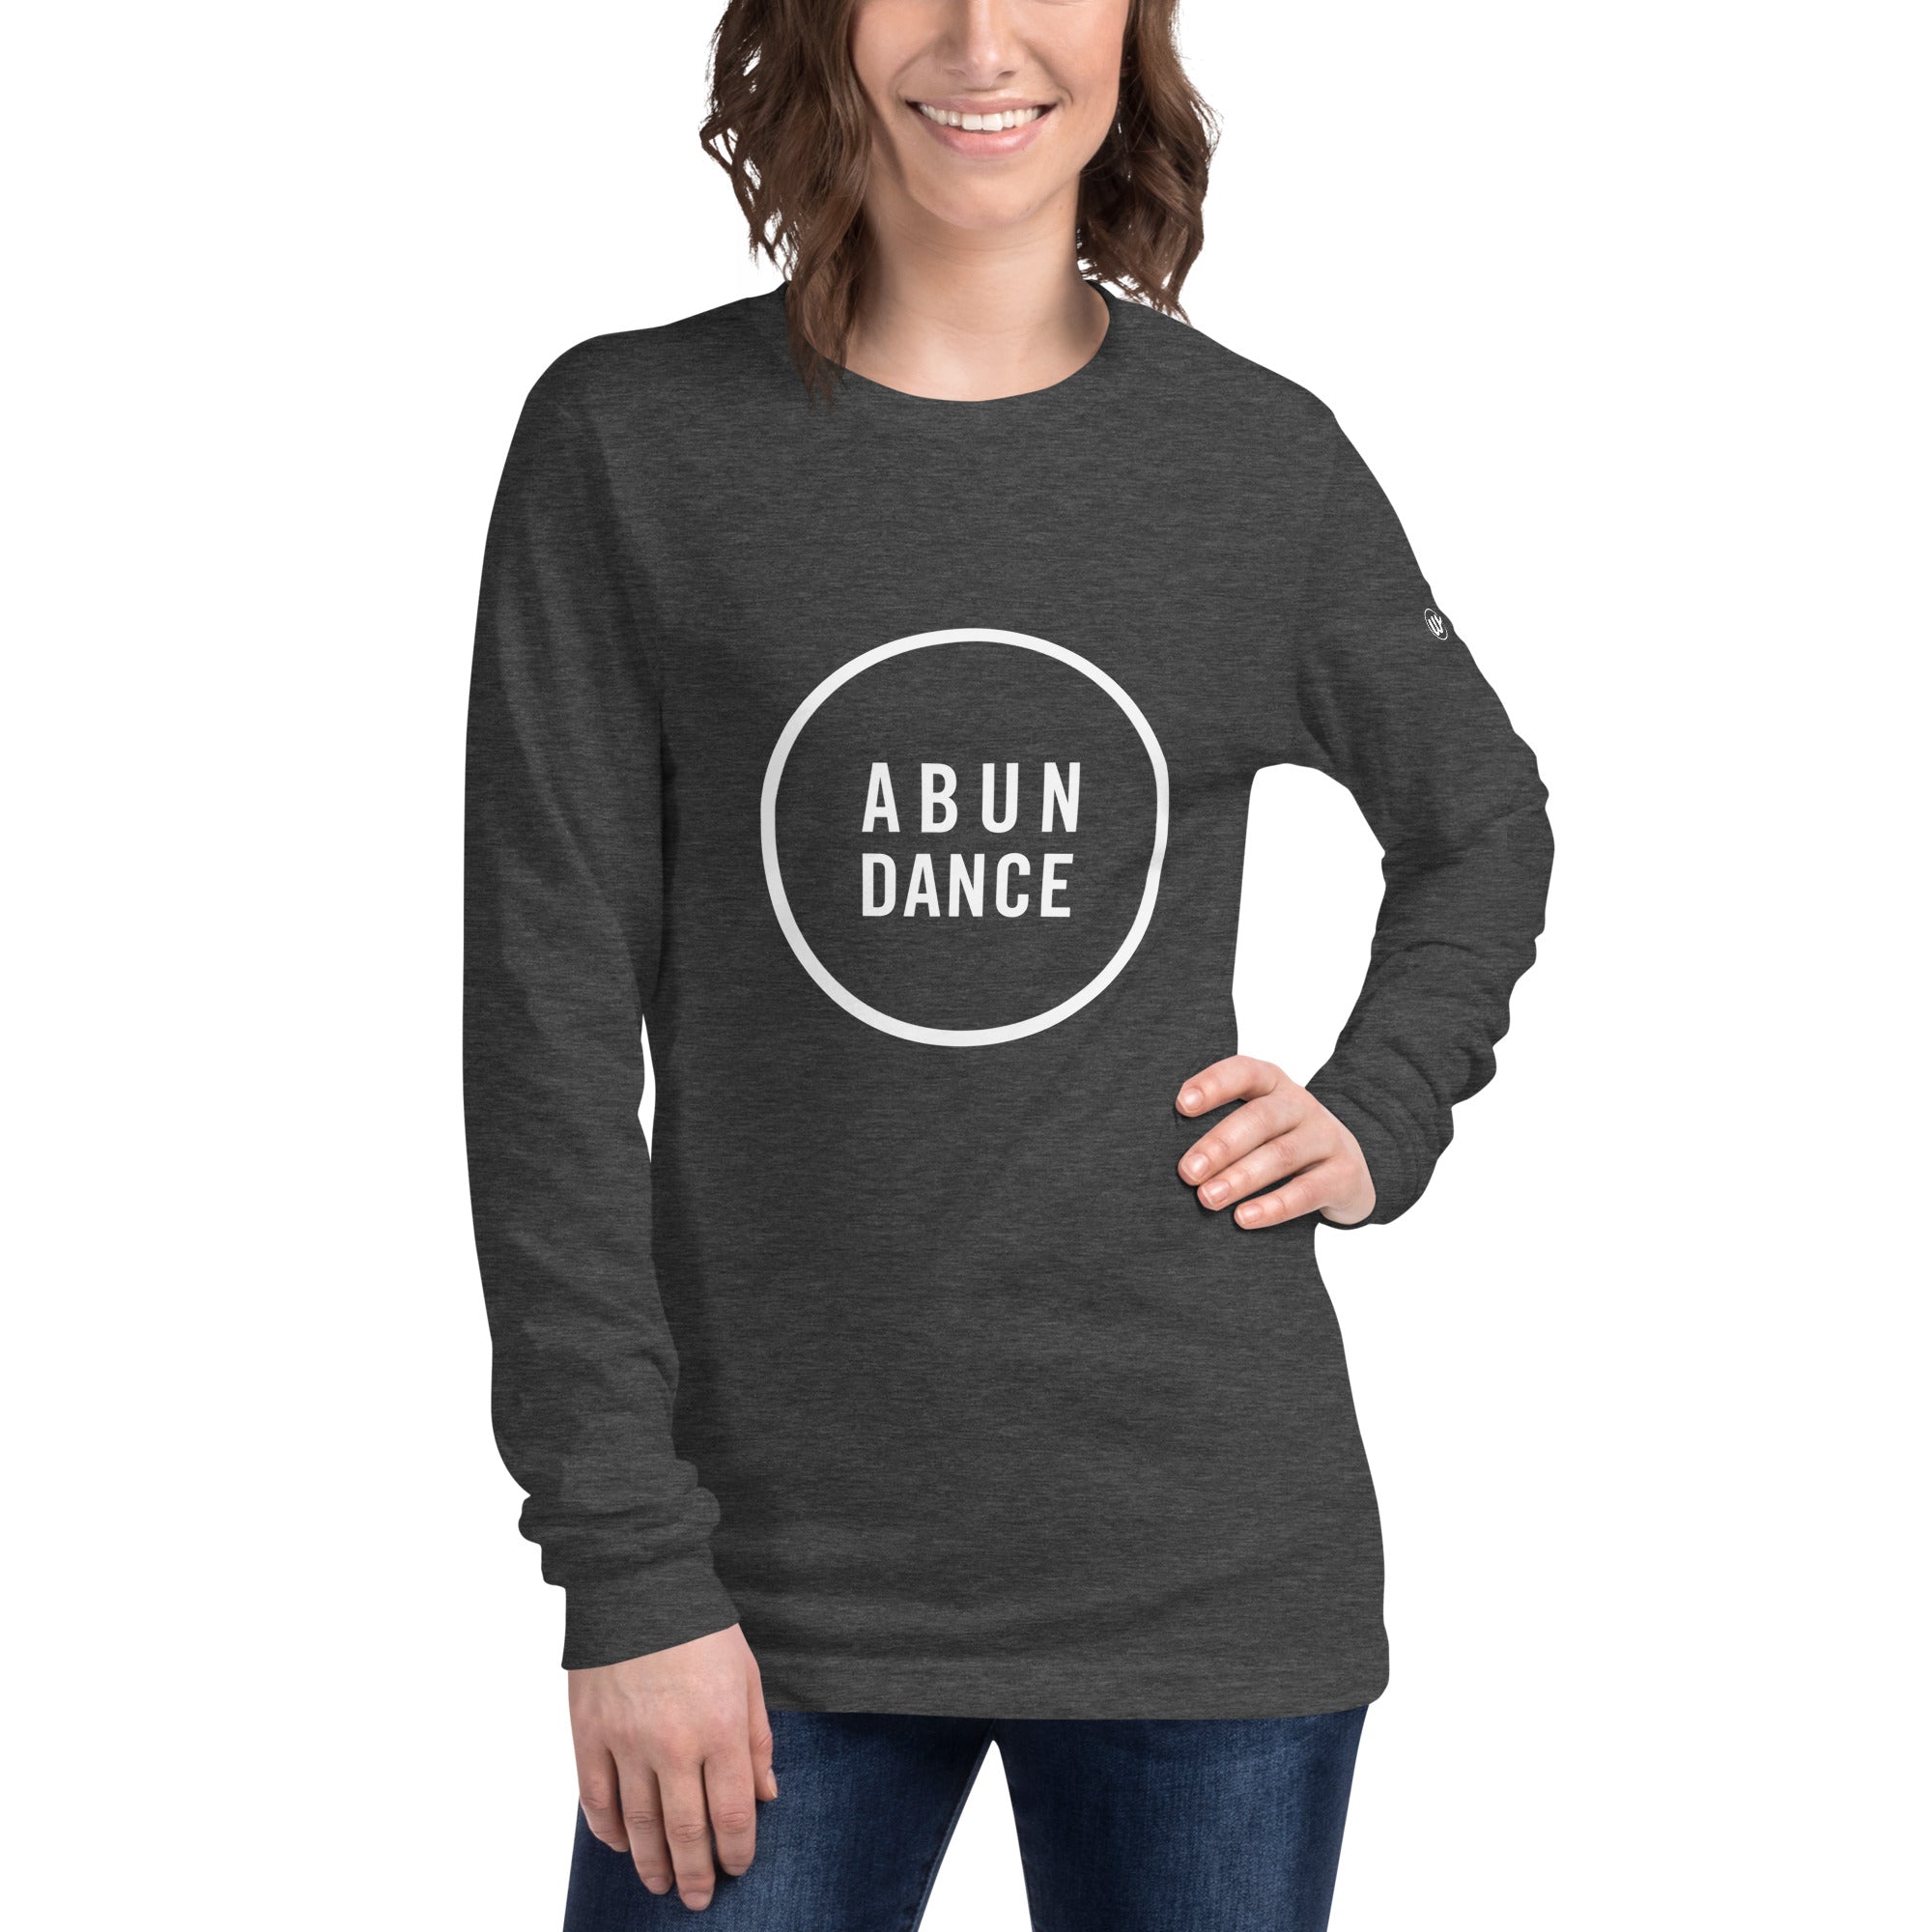 Abun-dance Long Sleeve